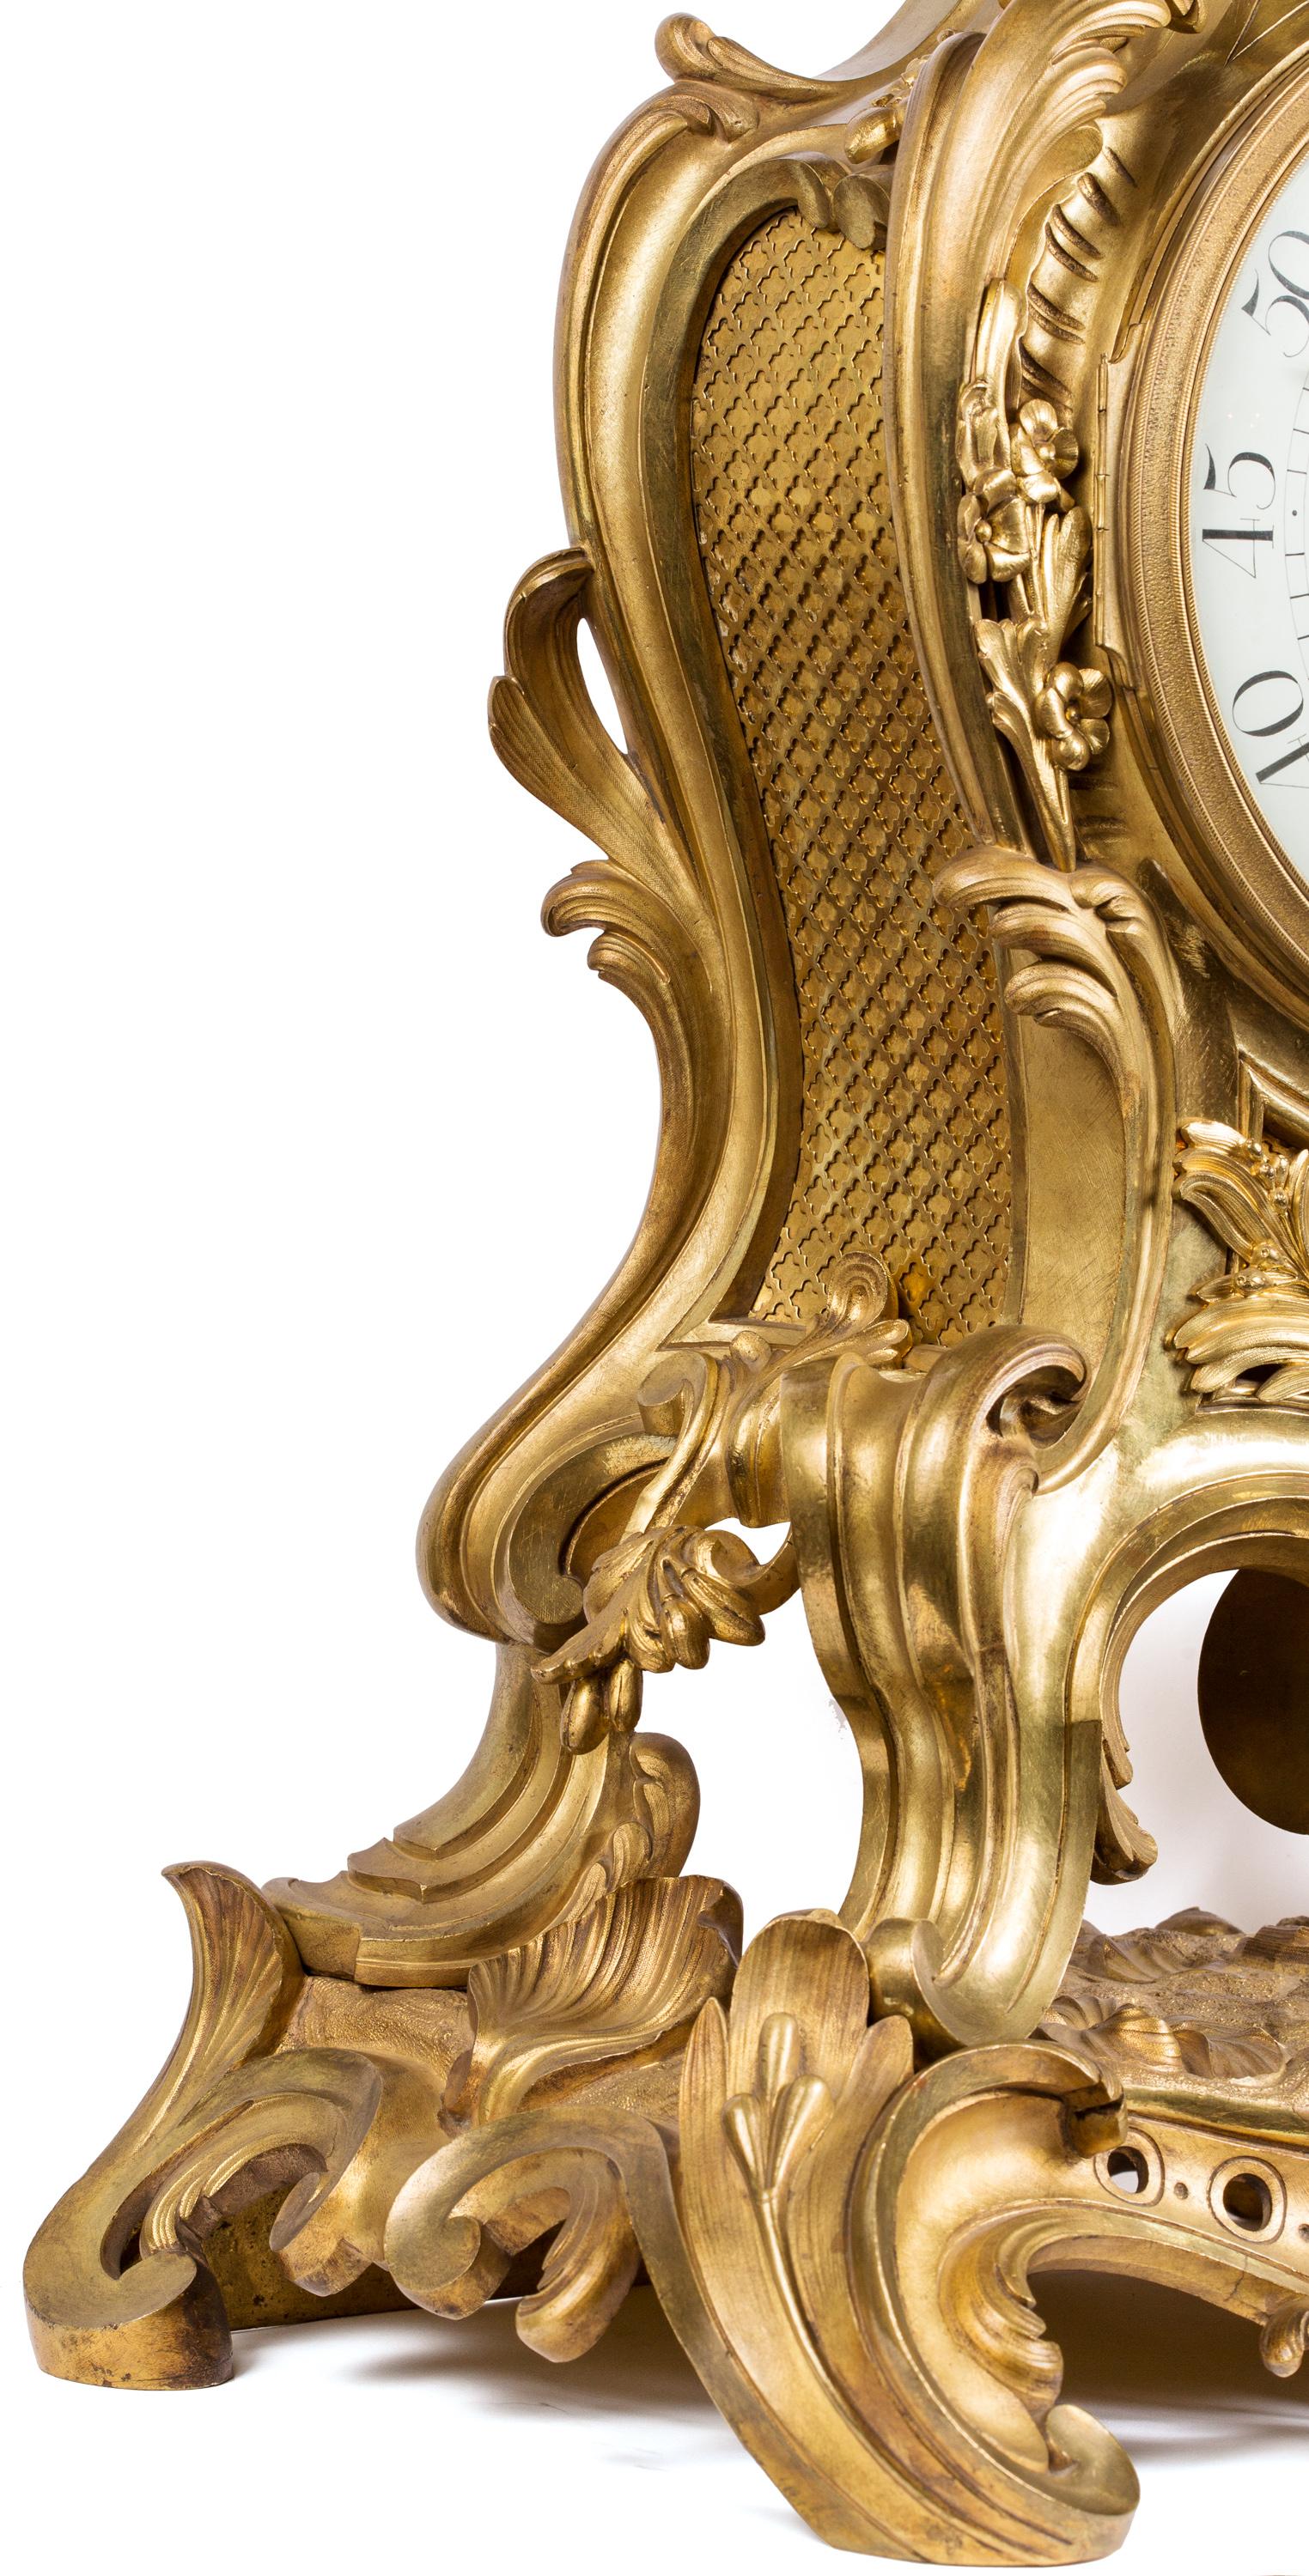 Véritable pièce de musée, cette horloge magnifiquement sculpturale pourrait facilement trouver sa place dans un environnement traditionnel, ou constituer un contrepoint fonctionnel et explosif à un intérieur minimaliste. S. Marti et Cie (Samuel